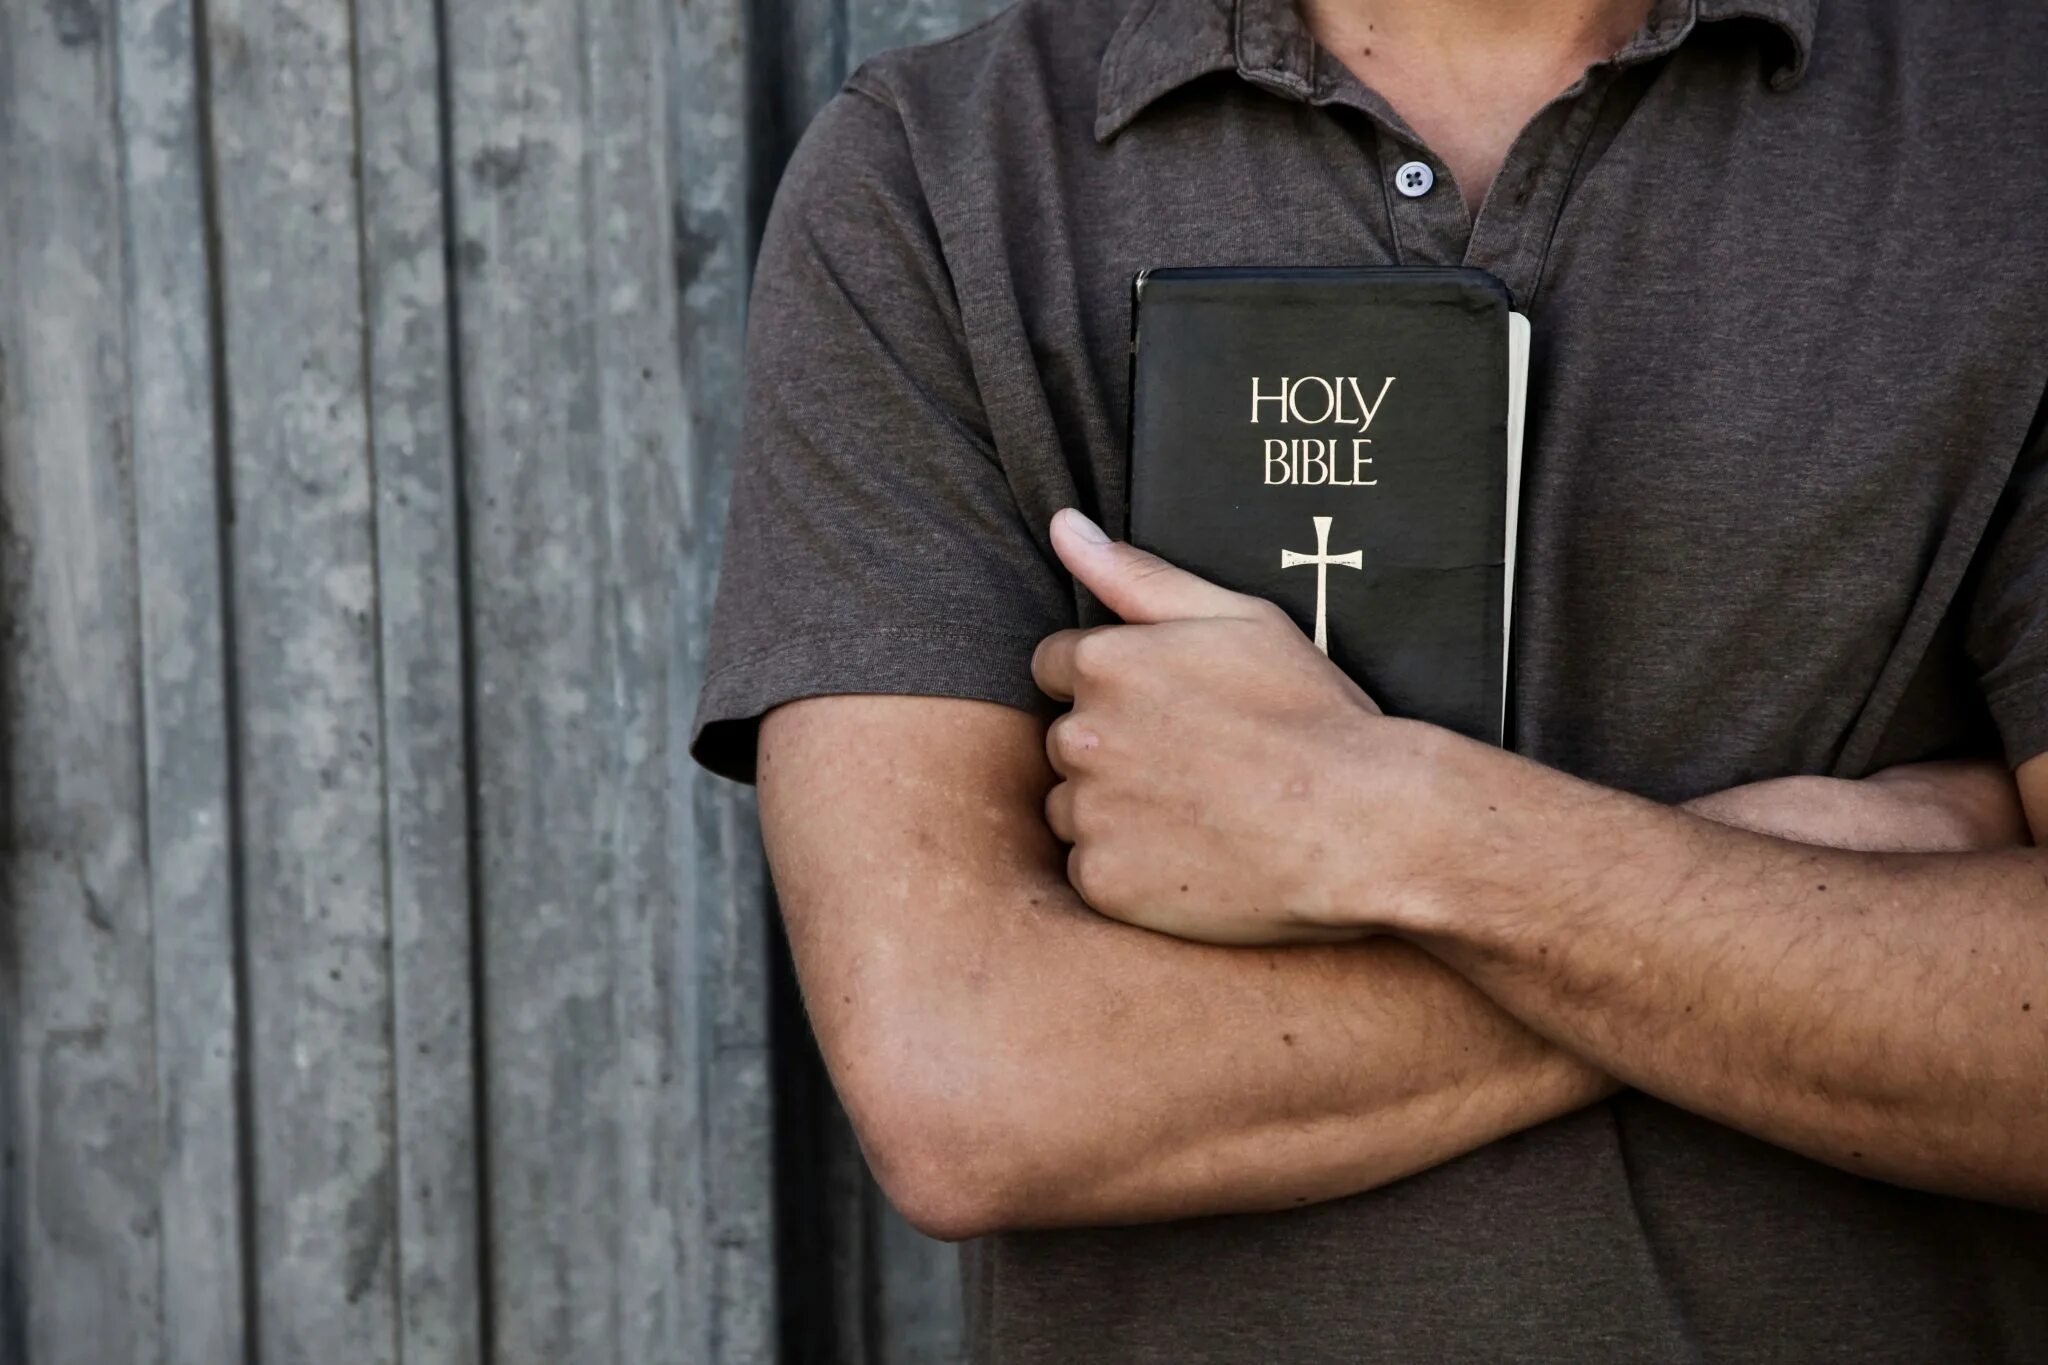 Читаем библию. Человек с Библией. Мужчина с Библией. Парень с Библией в руках. Библия в руках.